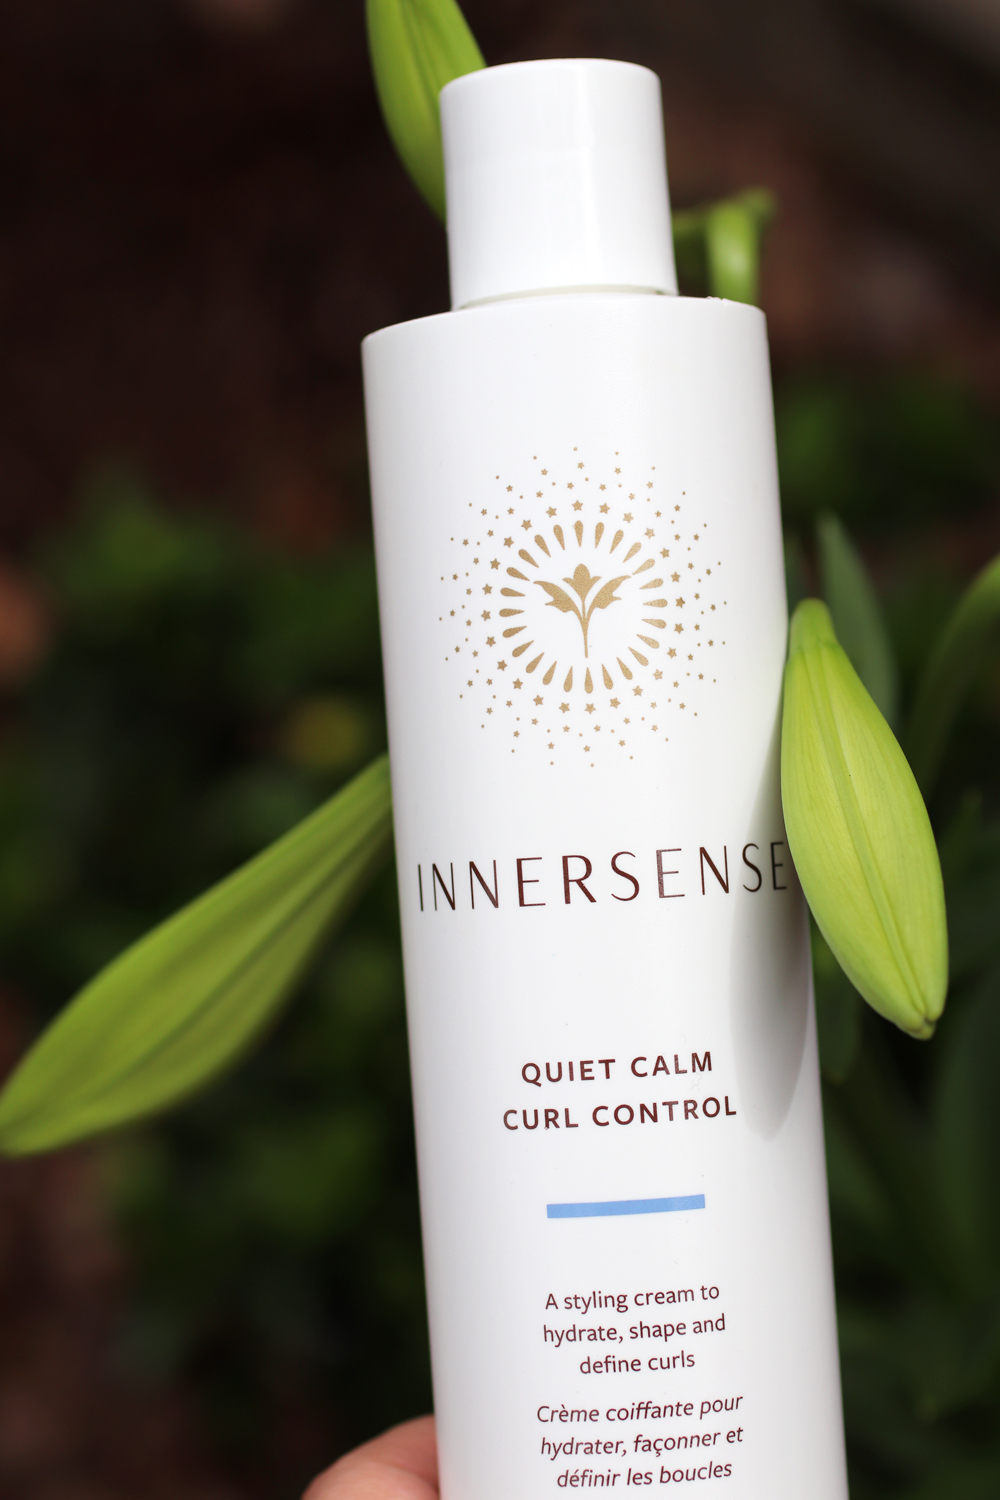 Innersense Quiet Calm Curl Control from Vert Beauty